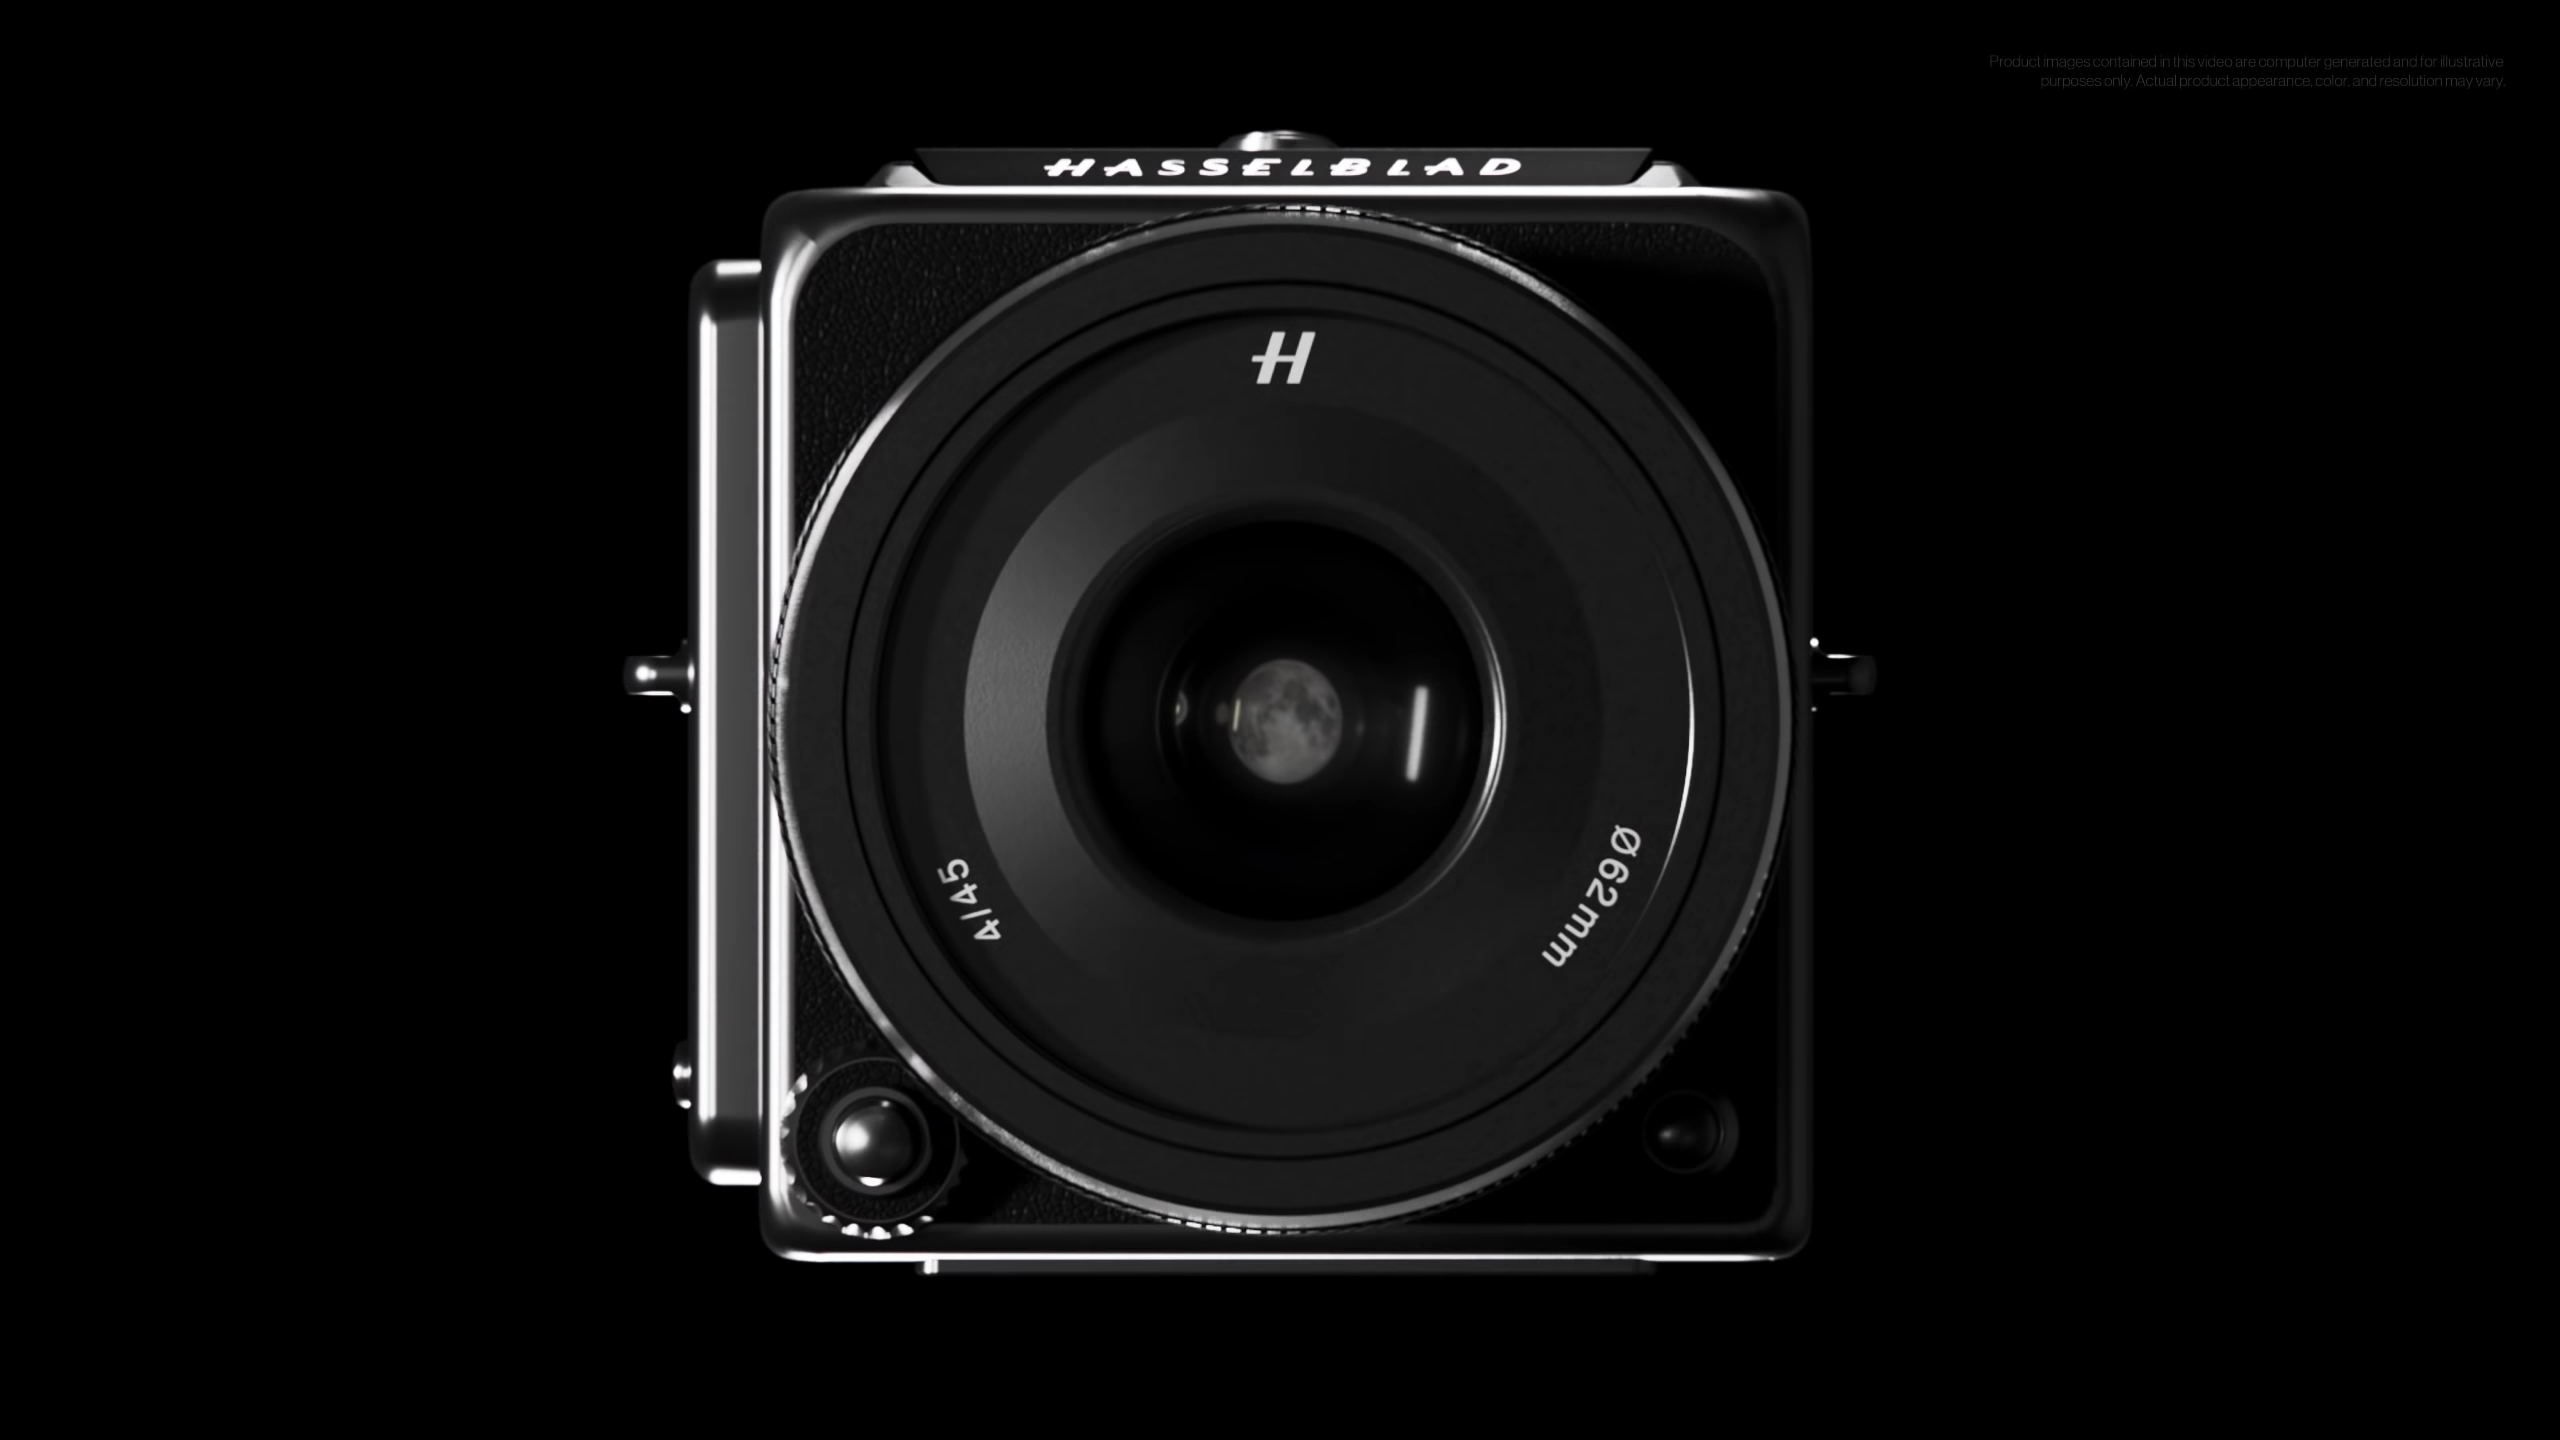 OnePlus Hasselblad ֆոտոխցիկն ընտրված է